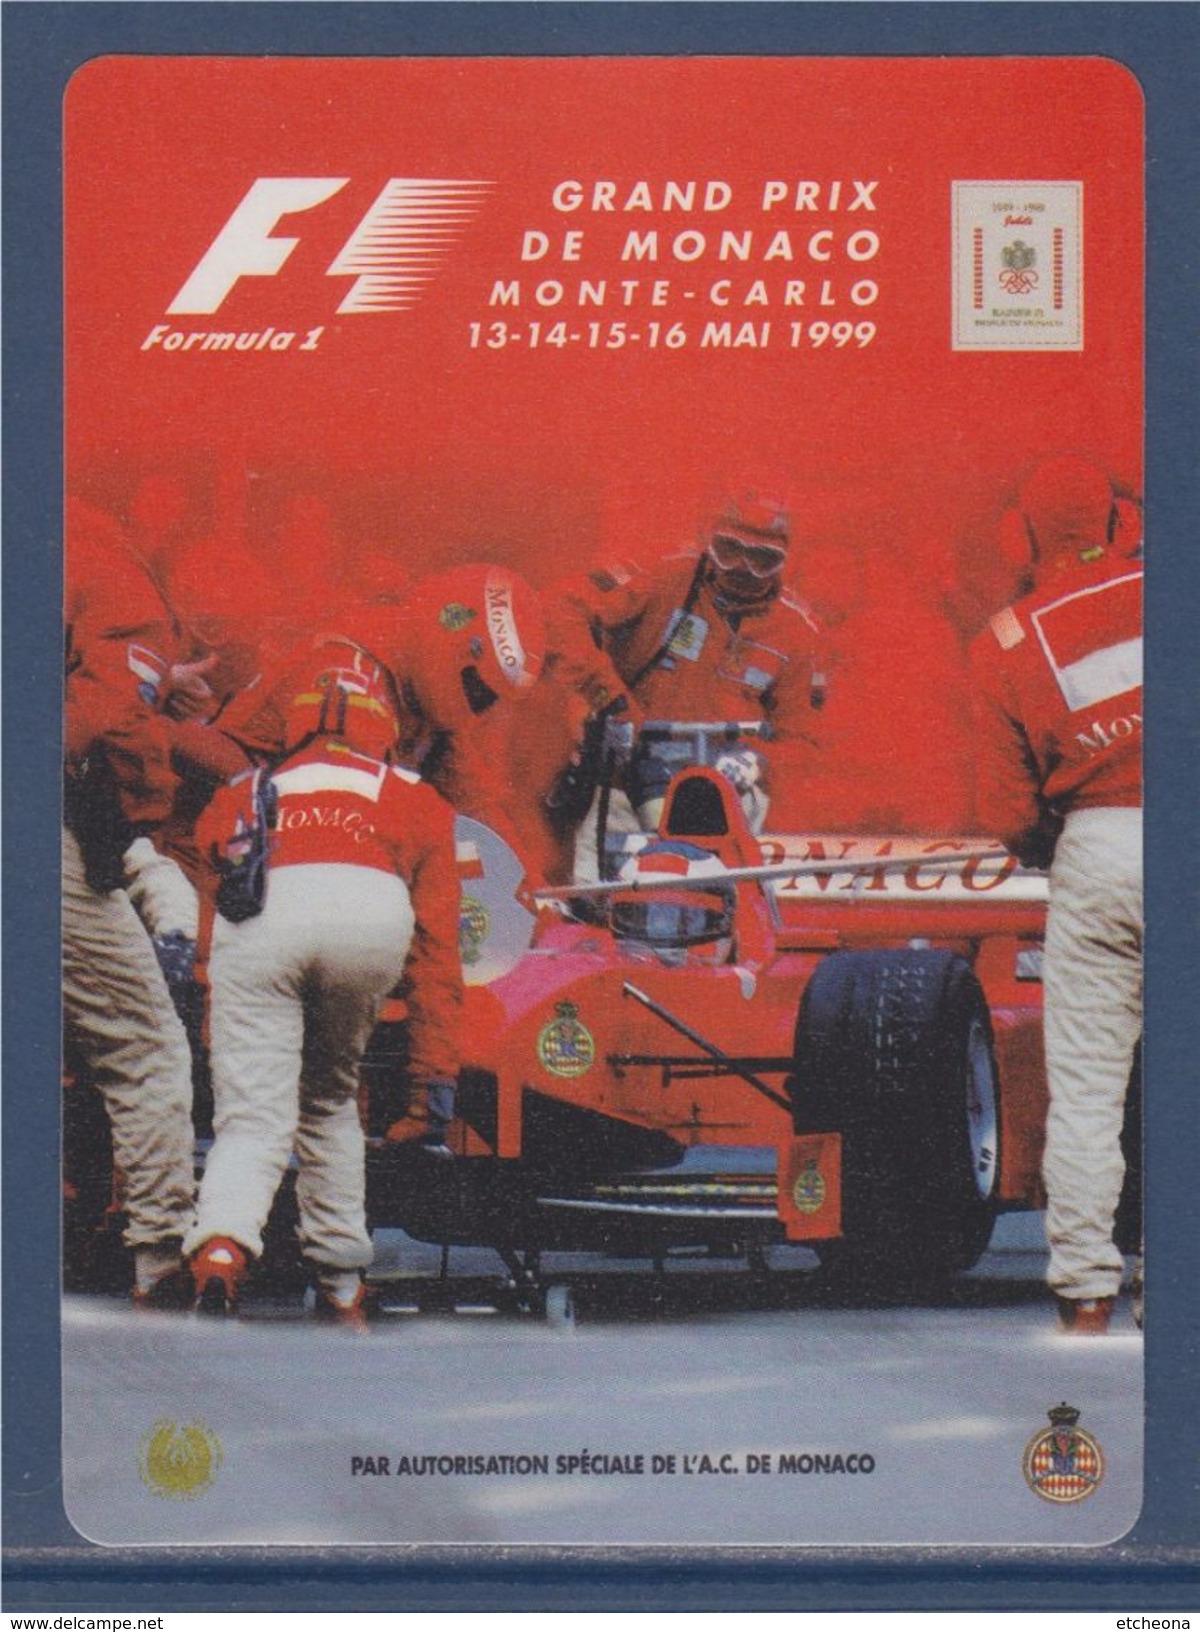 = Autocollant Grand Prix De Monaco Monte-Carlo Mai 1999 Formule 1 (8 Cm X 11cm) - Automobile - F1